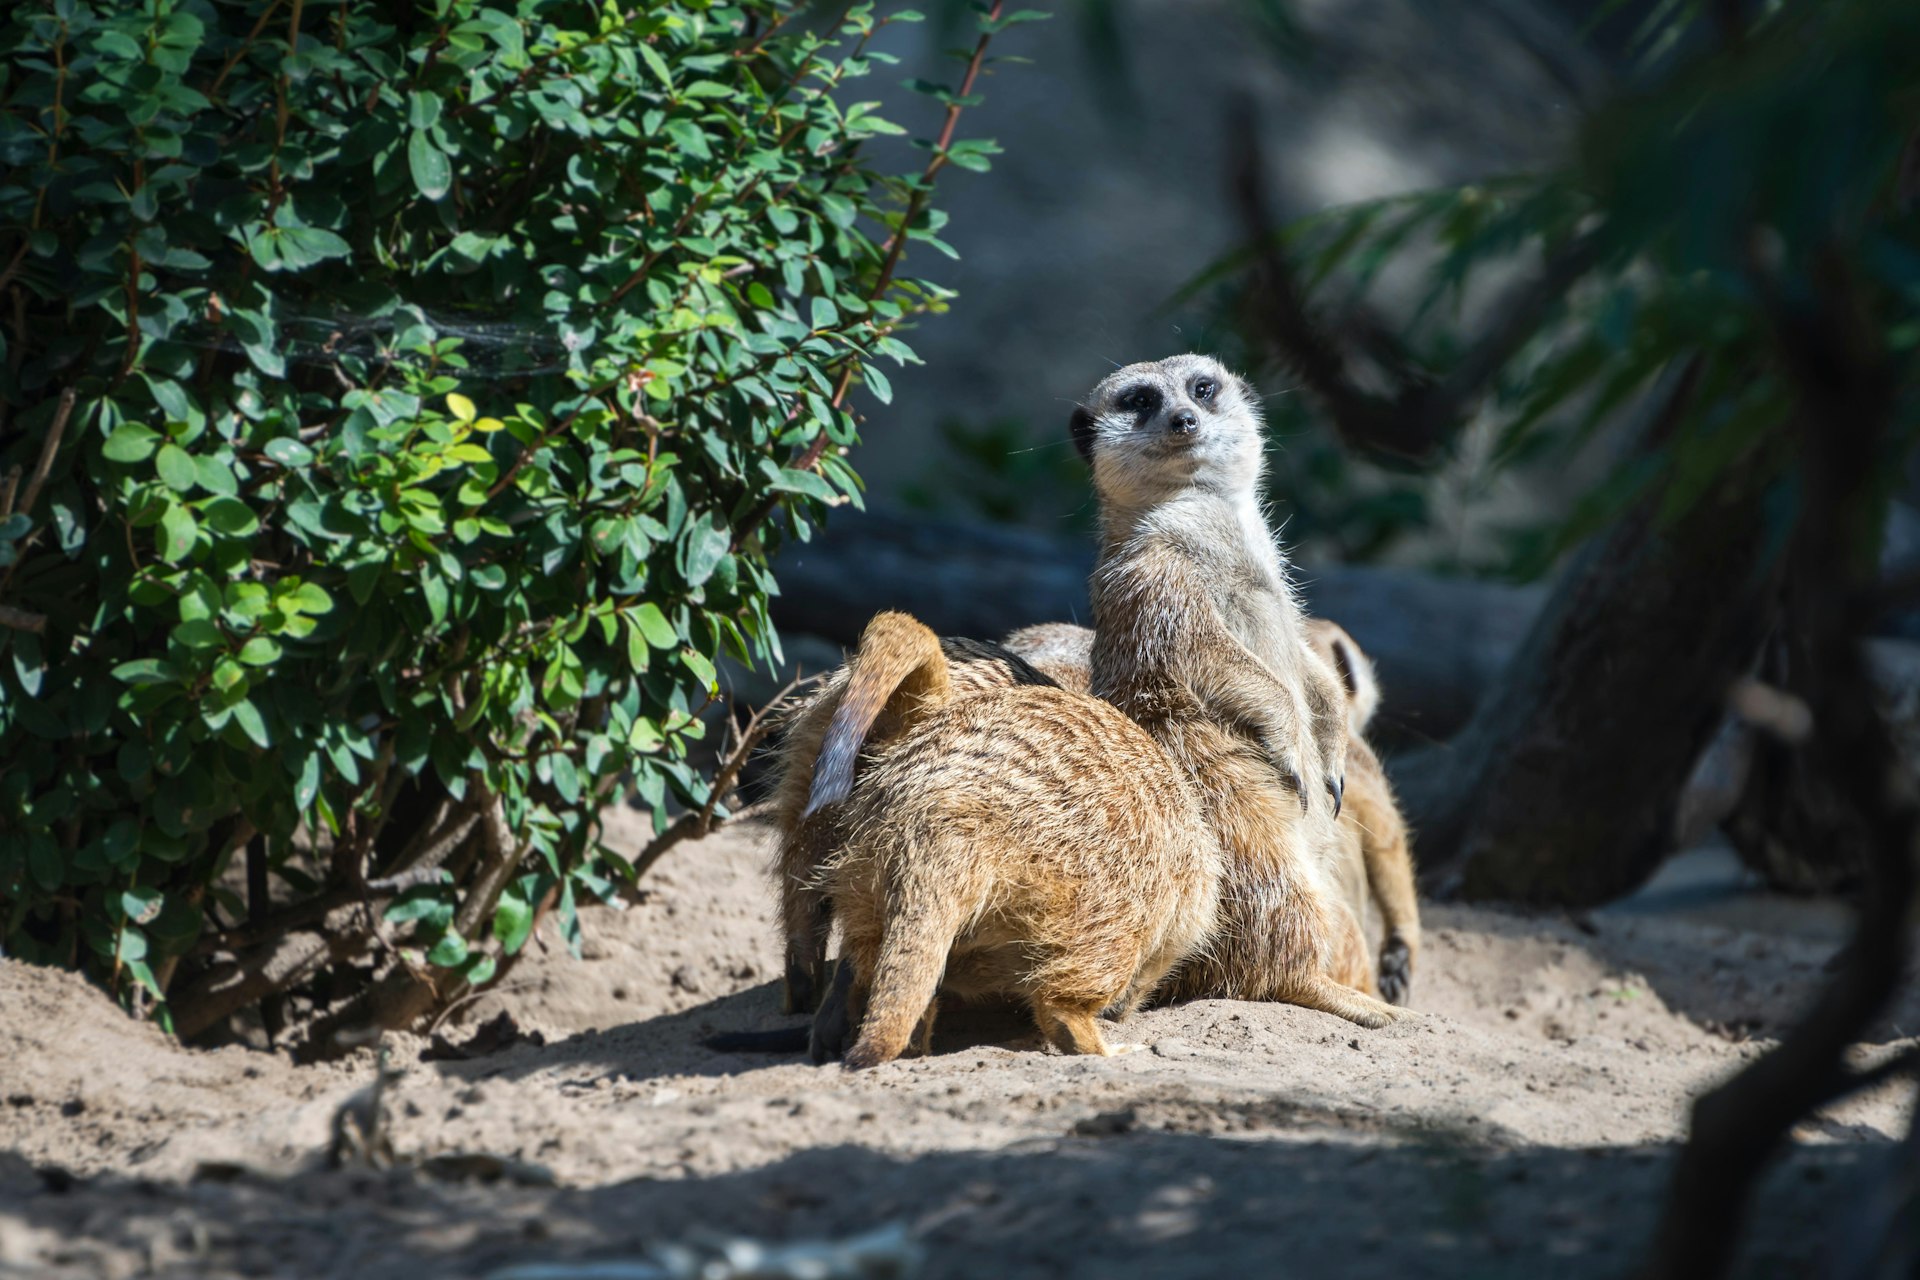 meerkat at Toldeo Zoo standing guard